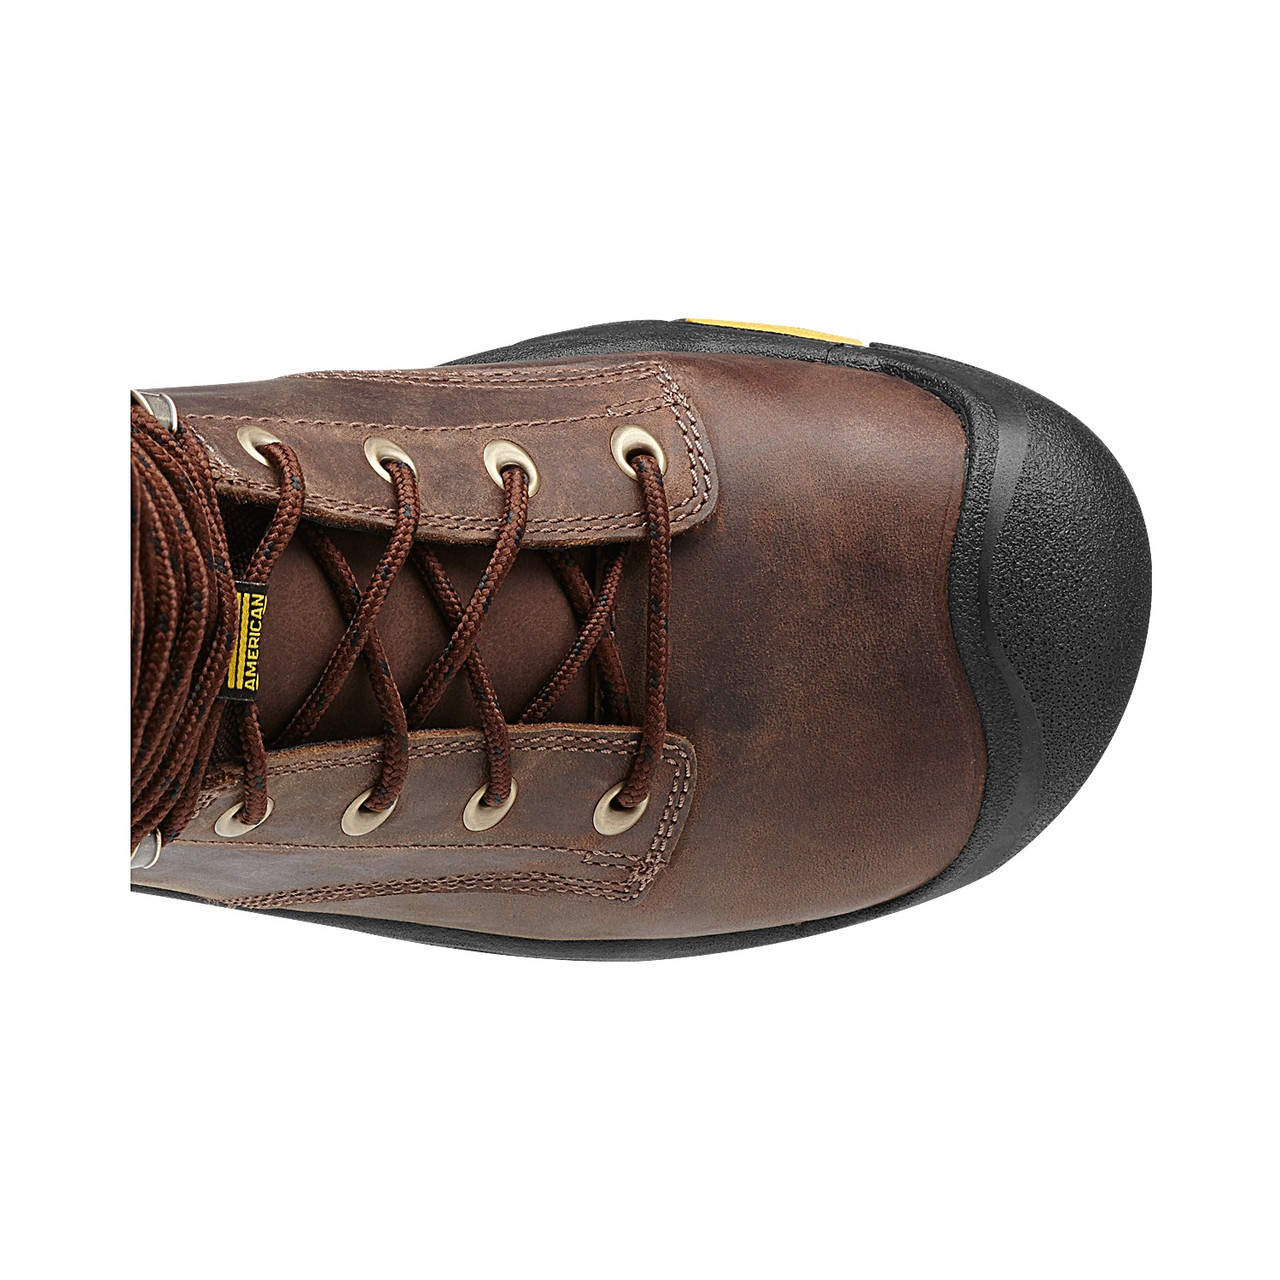 Men's Mt Vernon 6 MET Waterproof Boot (Steel Toe) | Cascade Brown